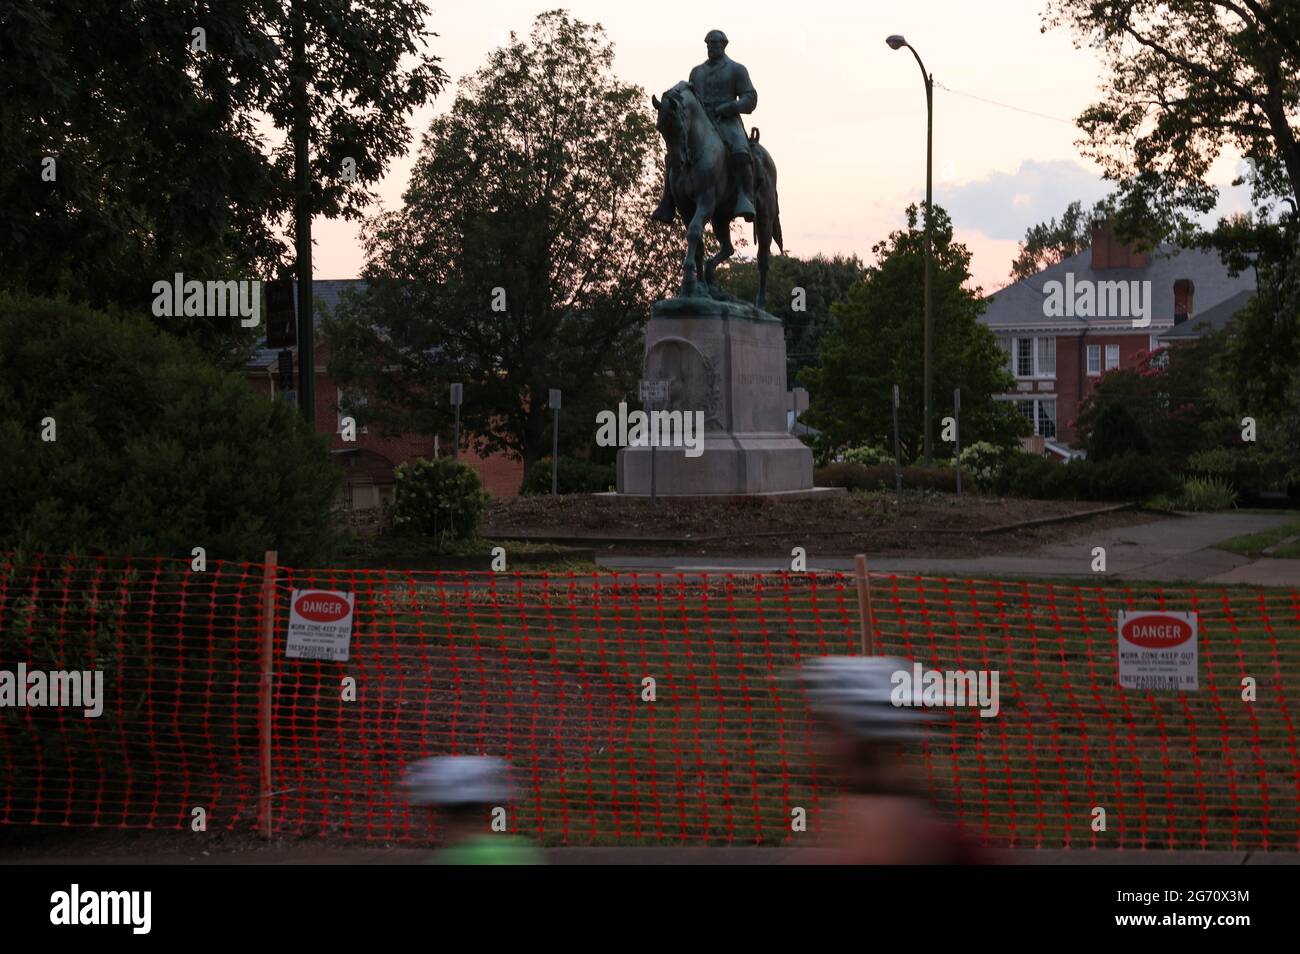 Una estatua del general confederado Robert E. Lee está en Charlottesville, Virginia, EE.UU., el día antes de su retirada programada después de años de batalla legal sobre el monumento contencioso, 9 de julio de 2021. REUTERS/Evelyn Hockstein Foto de stock